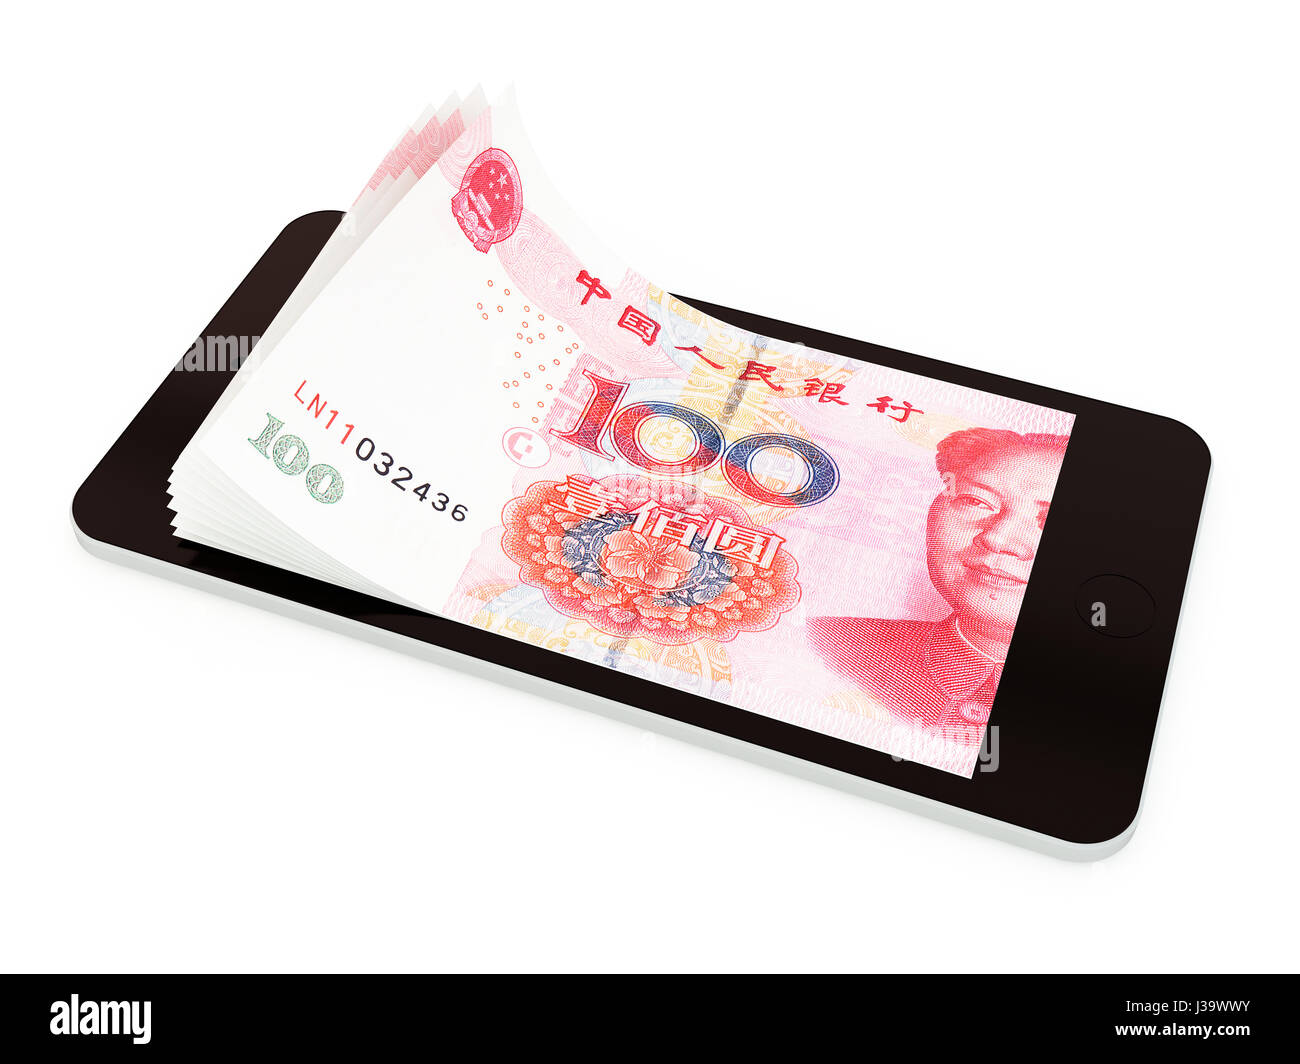 Paiement Mobile, transfert d'argent avec smart phone, yuan chinois. Rendu 3d illustration. Banque D'Images